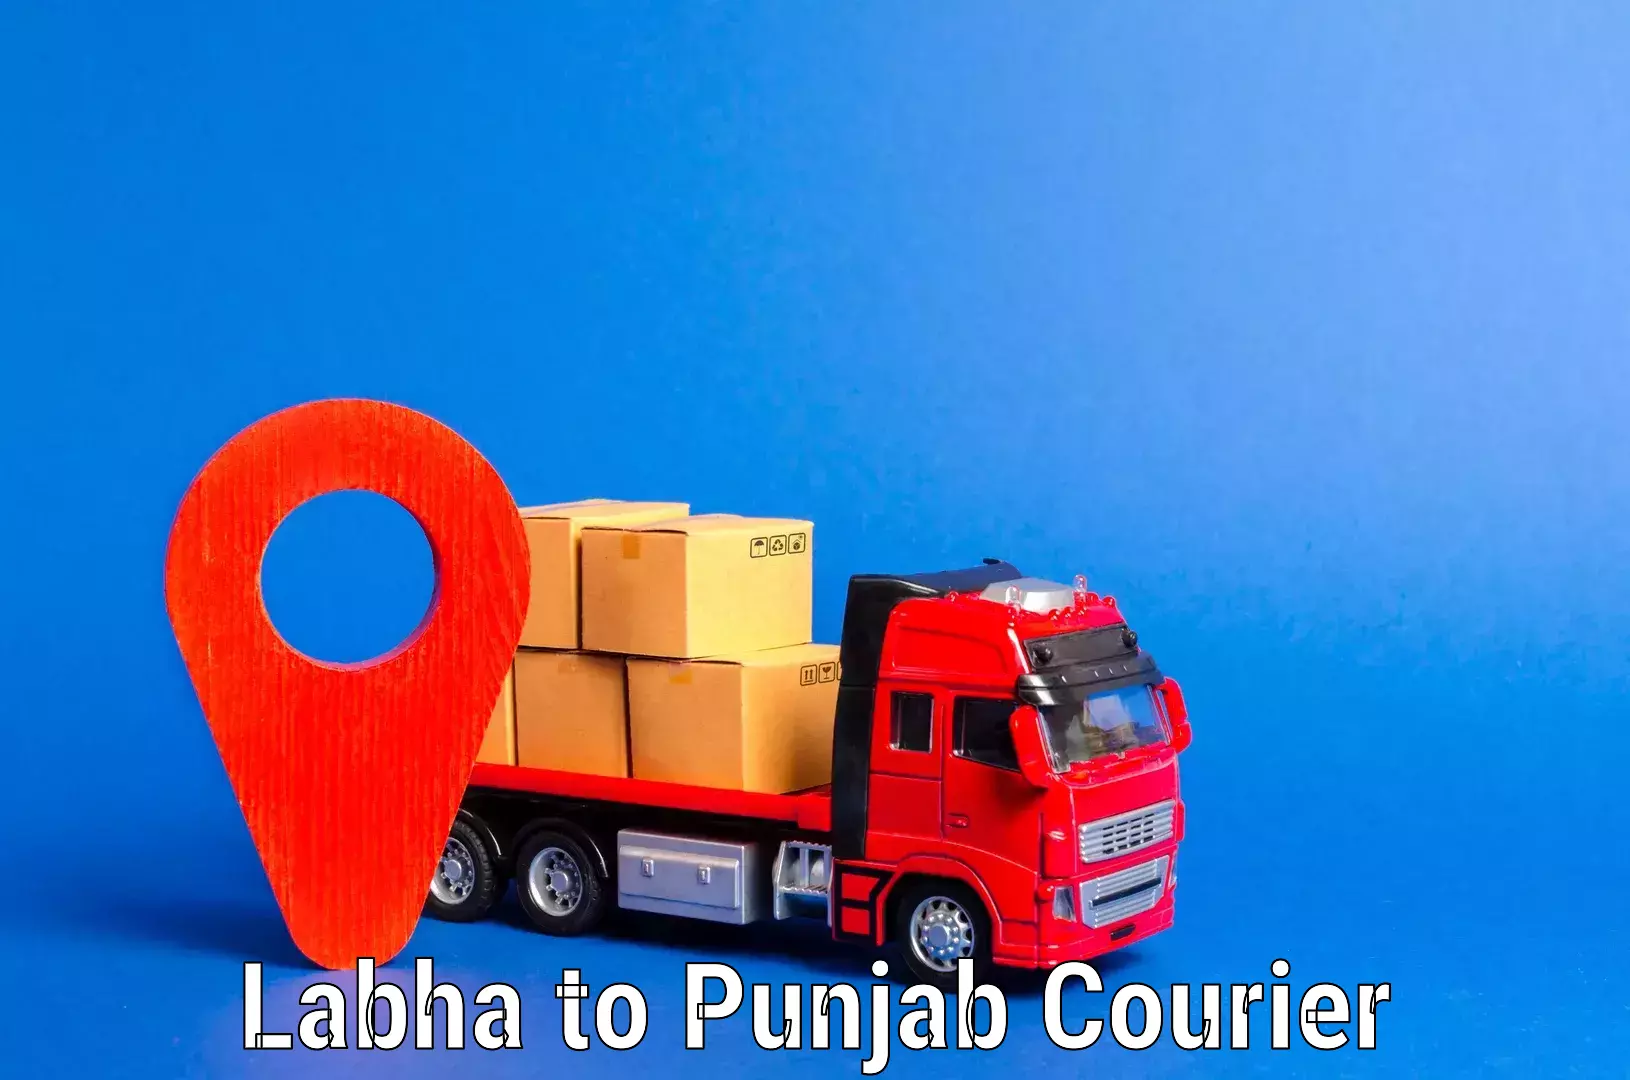 Professional furniture transport Labha to Punjab